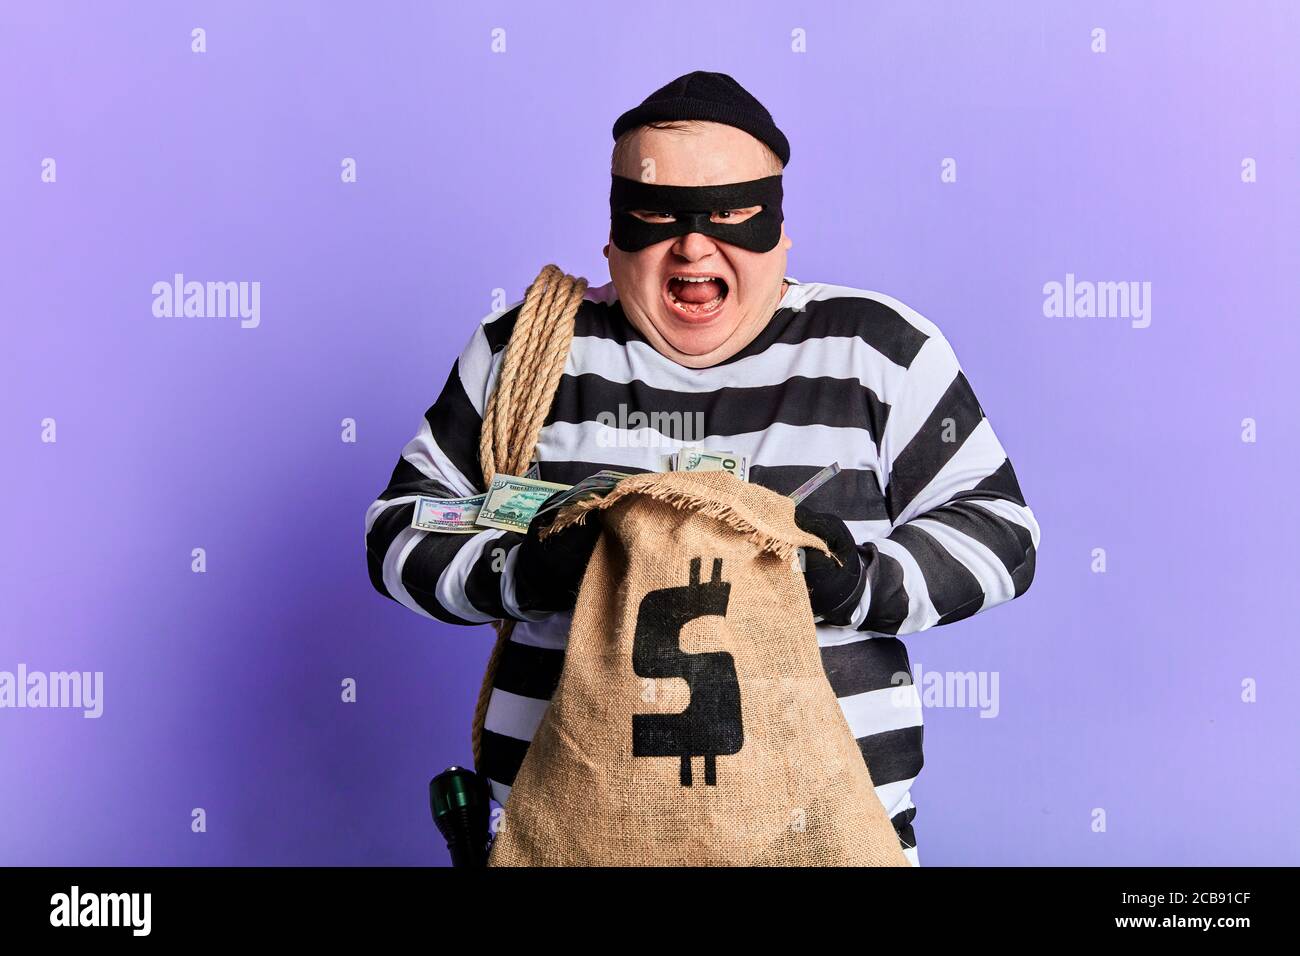 Bandit Crime Banque d'image et photos - Alamy